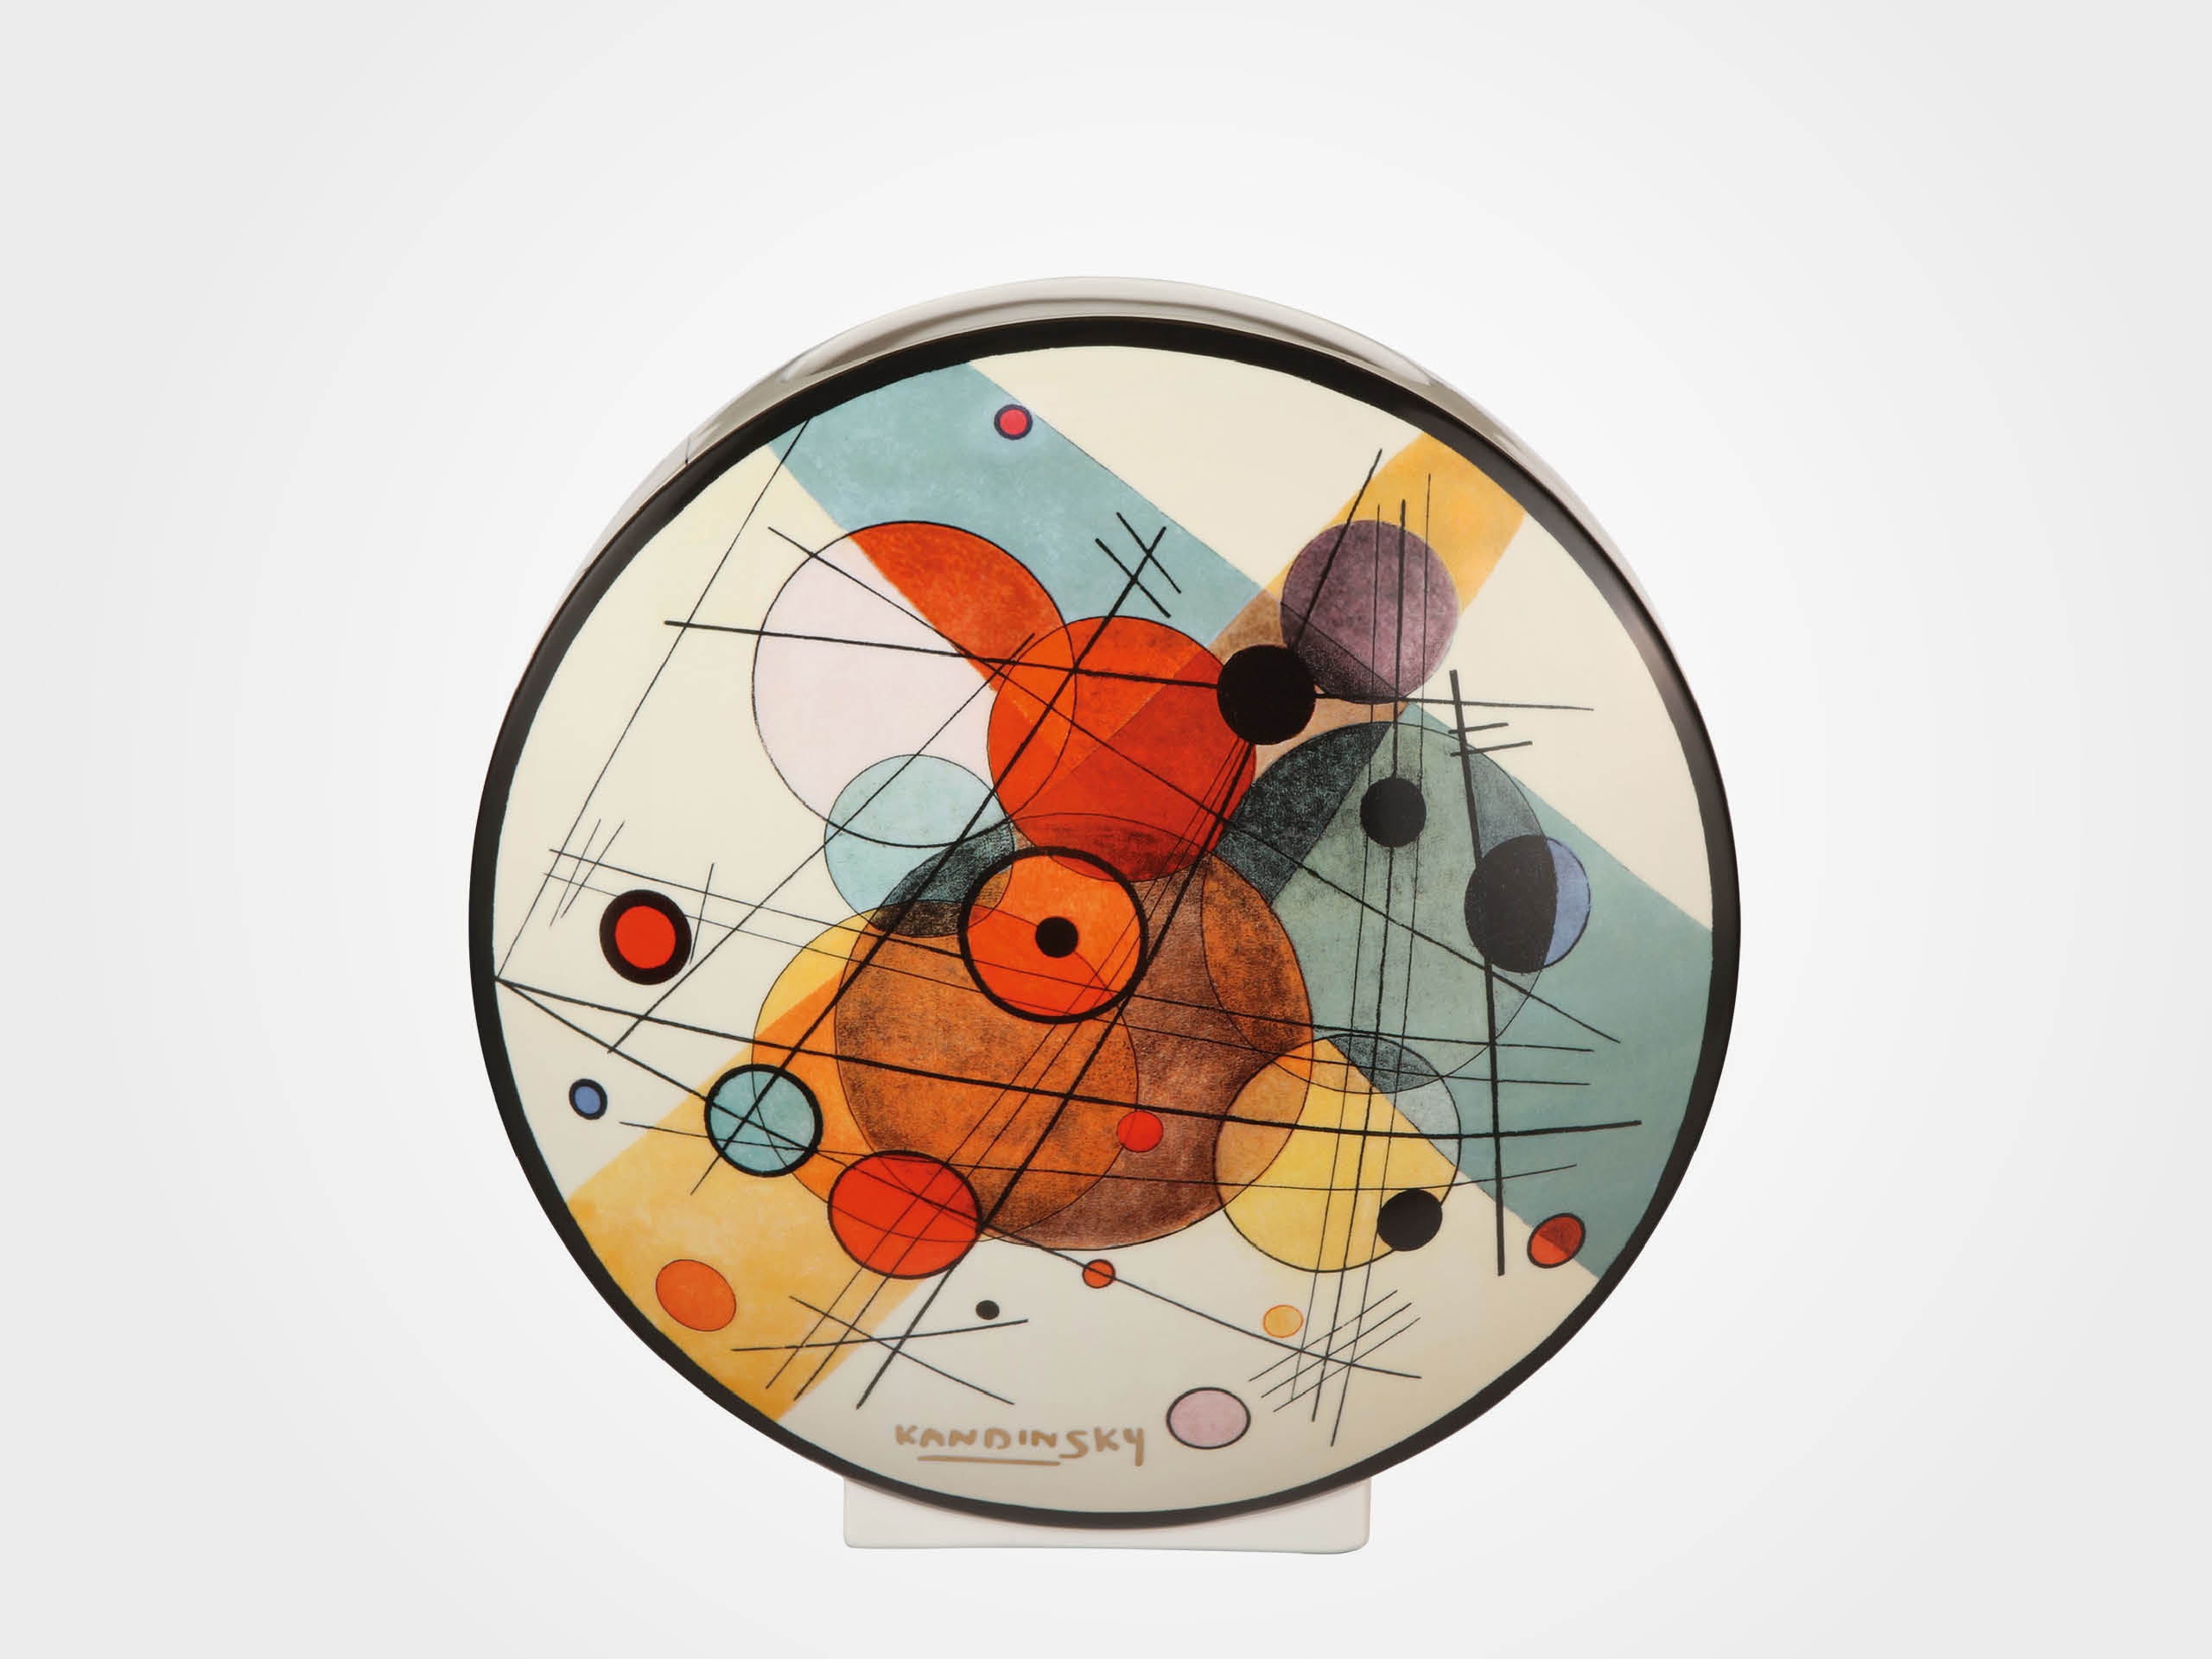 Porzellanvase "Kreise in einem Kreis" - nach Wassily Kandinsky